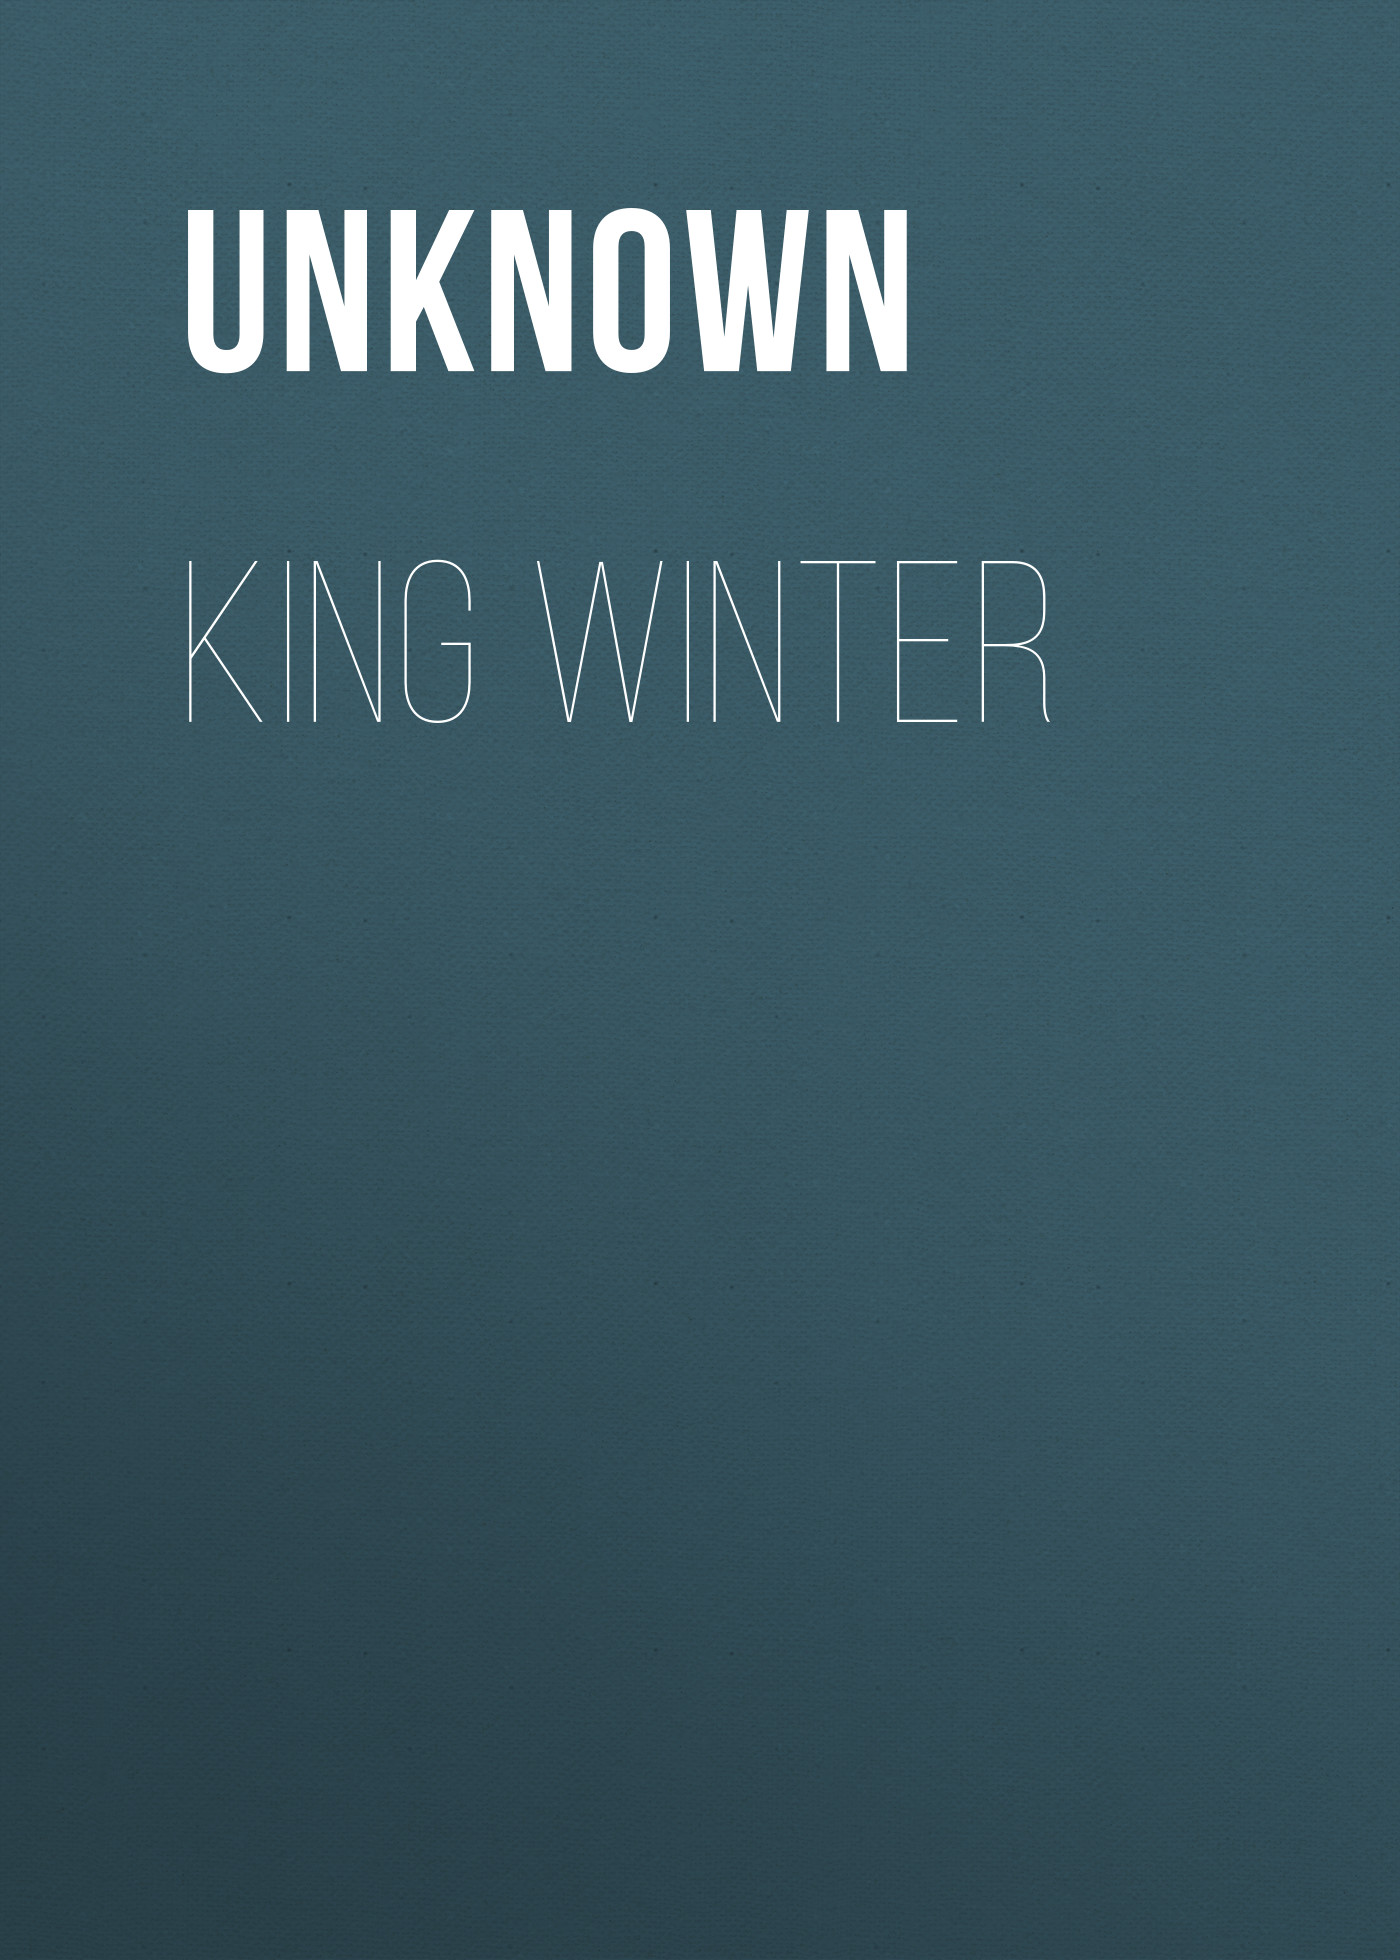 Книга King Winter из серии , созданная Unknown Unknown, может относится к жанру Зарубежные стихи, Поэзия, Зарубежная старинная литература, Зарубежная классика. Стоимость электронной книги King Winter с идентификатором 35495455 составляет 0 руб.